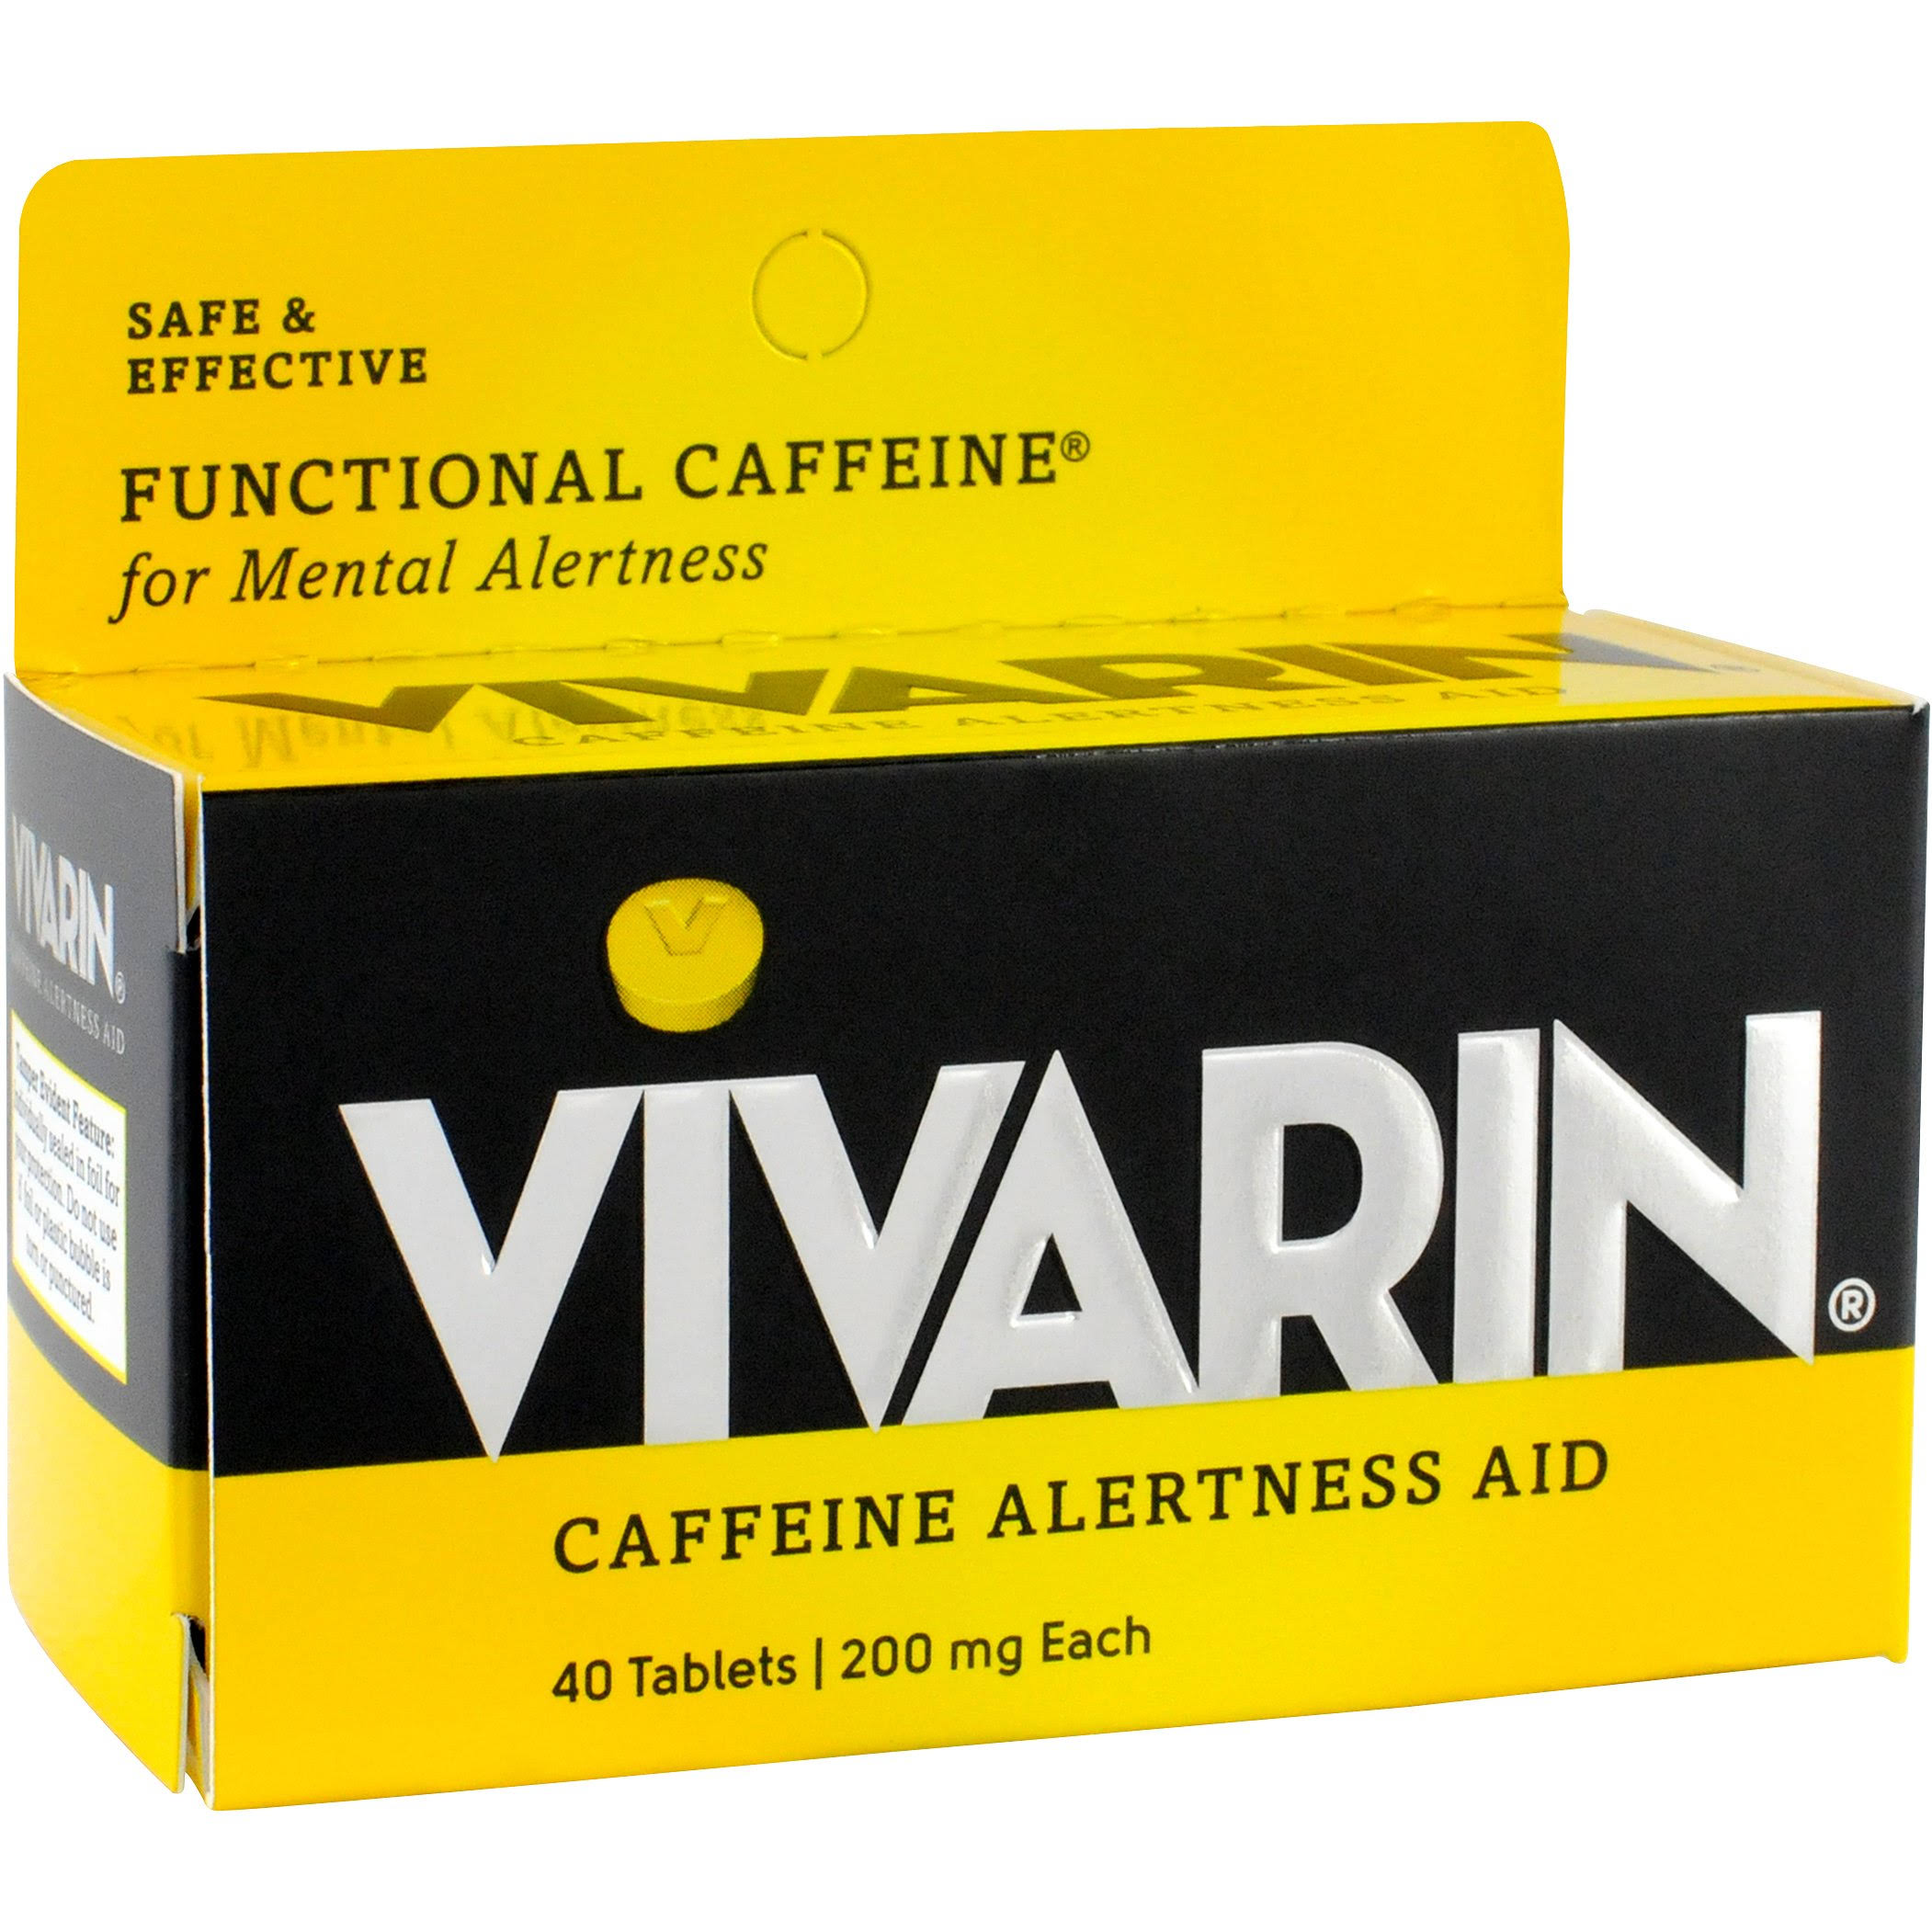 Vivarin Caffeine Alertness Aid Tablets - 200mg, 40ct